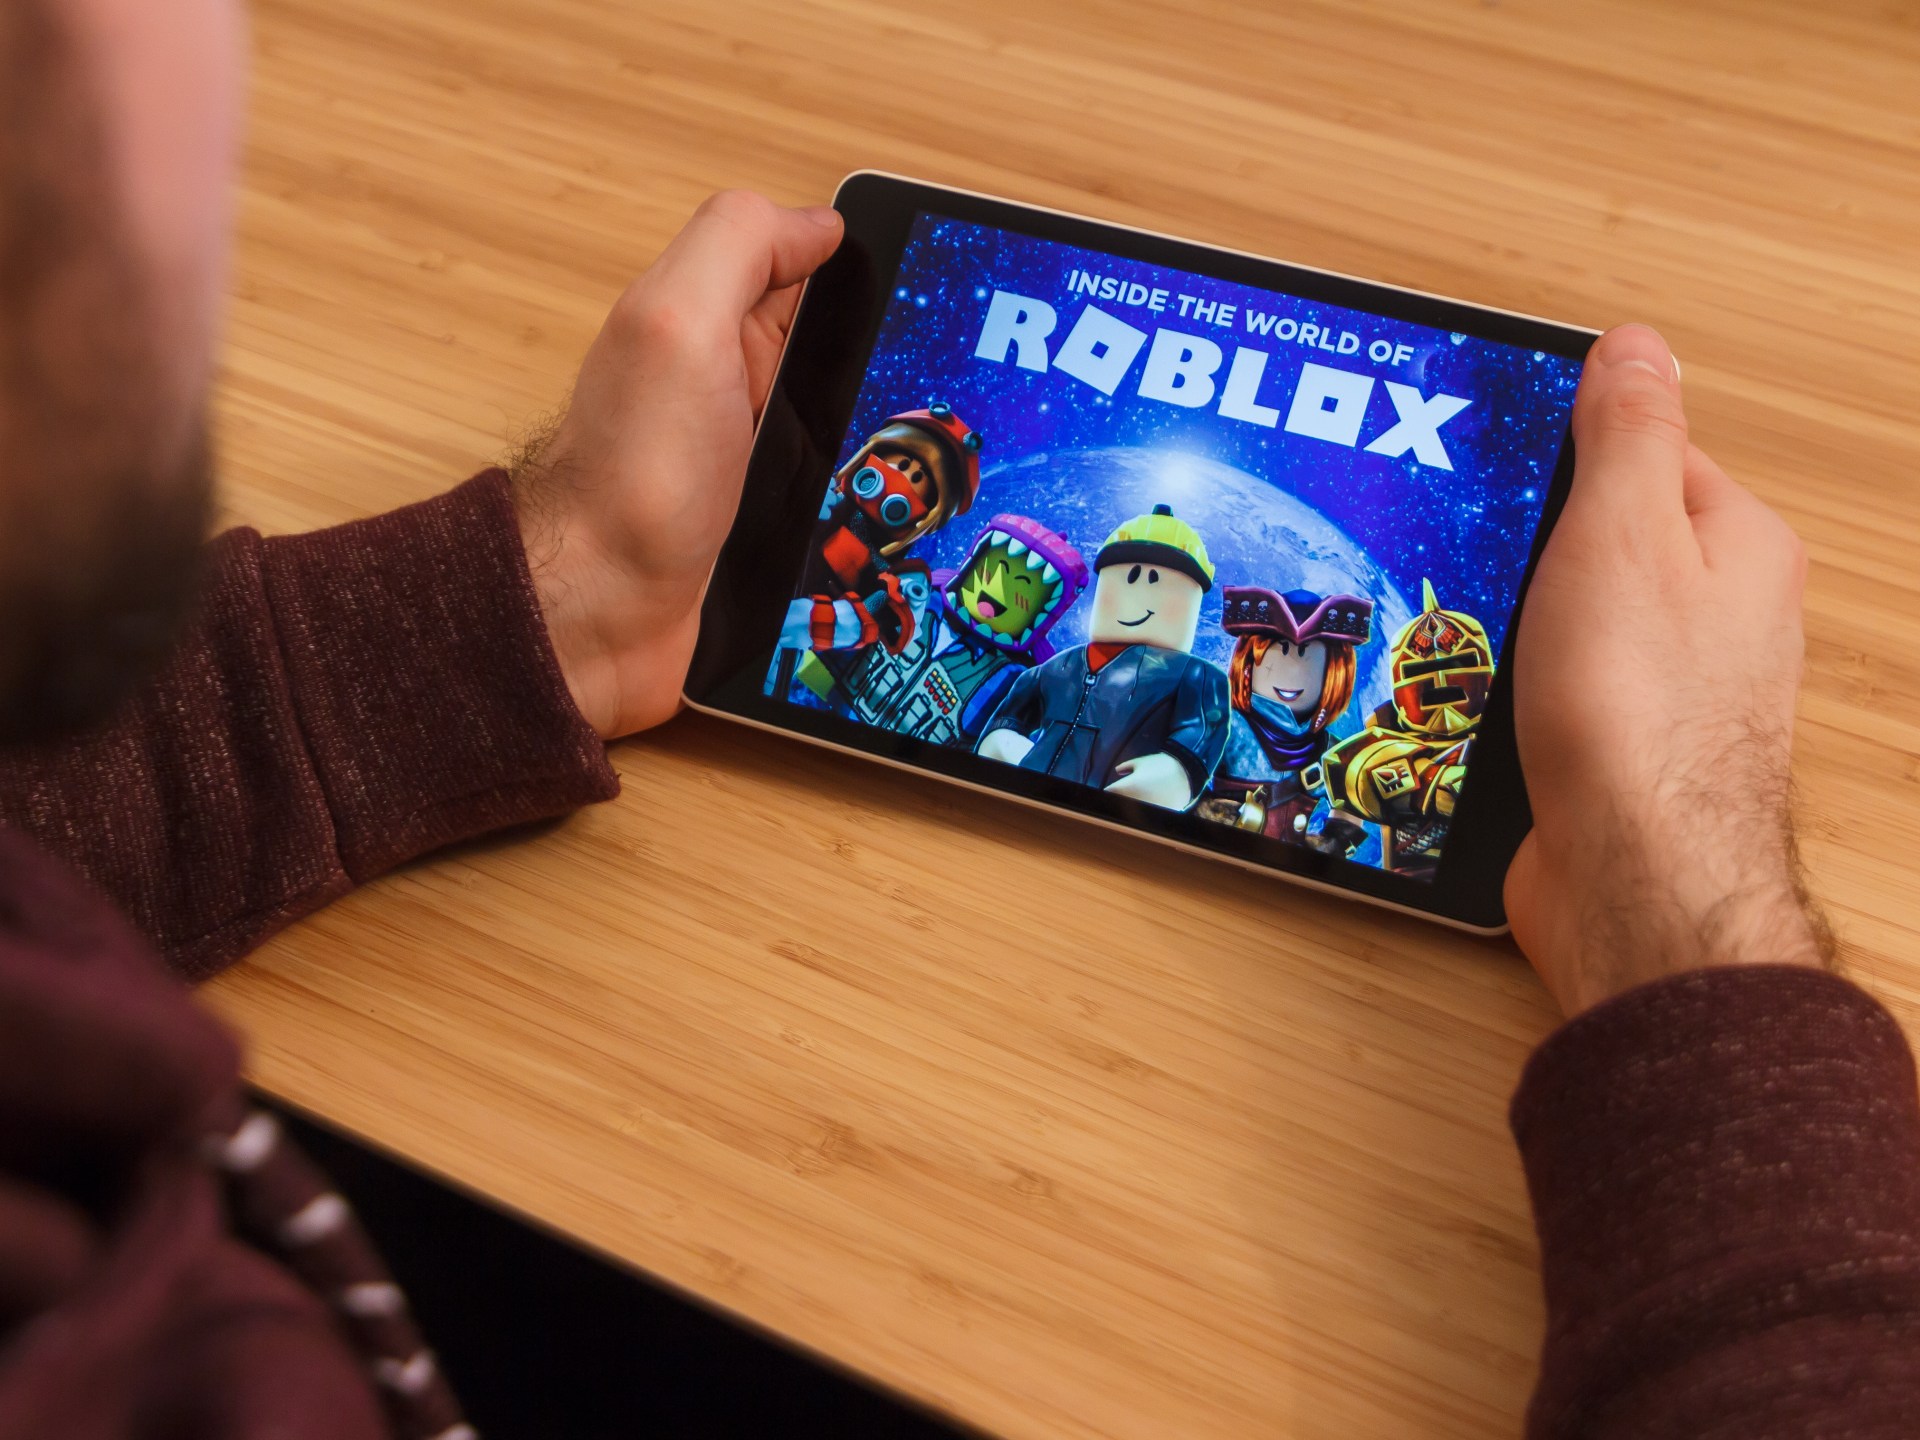 犯罪分子将“Roblox”游戏变成了袭击儿童的幌子技术